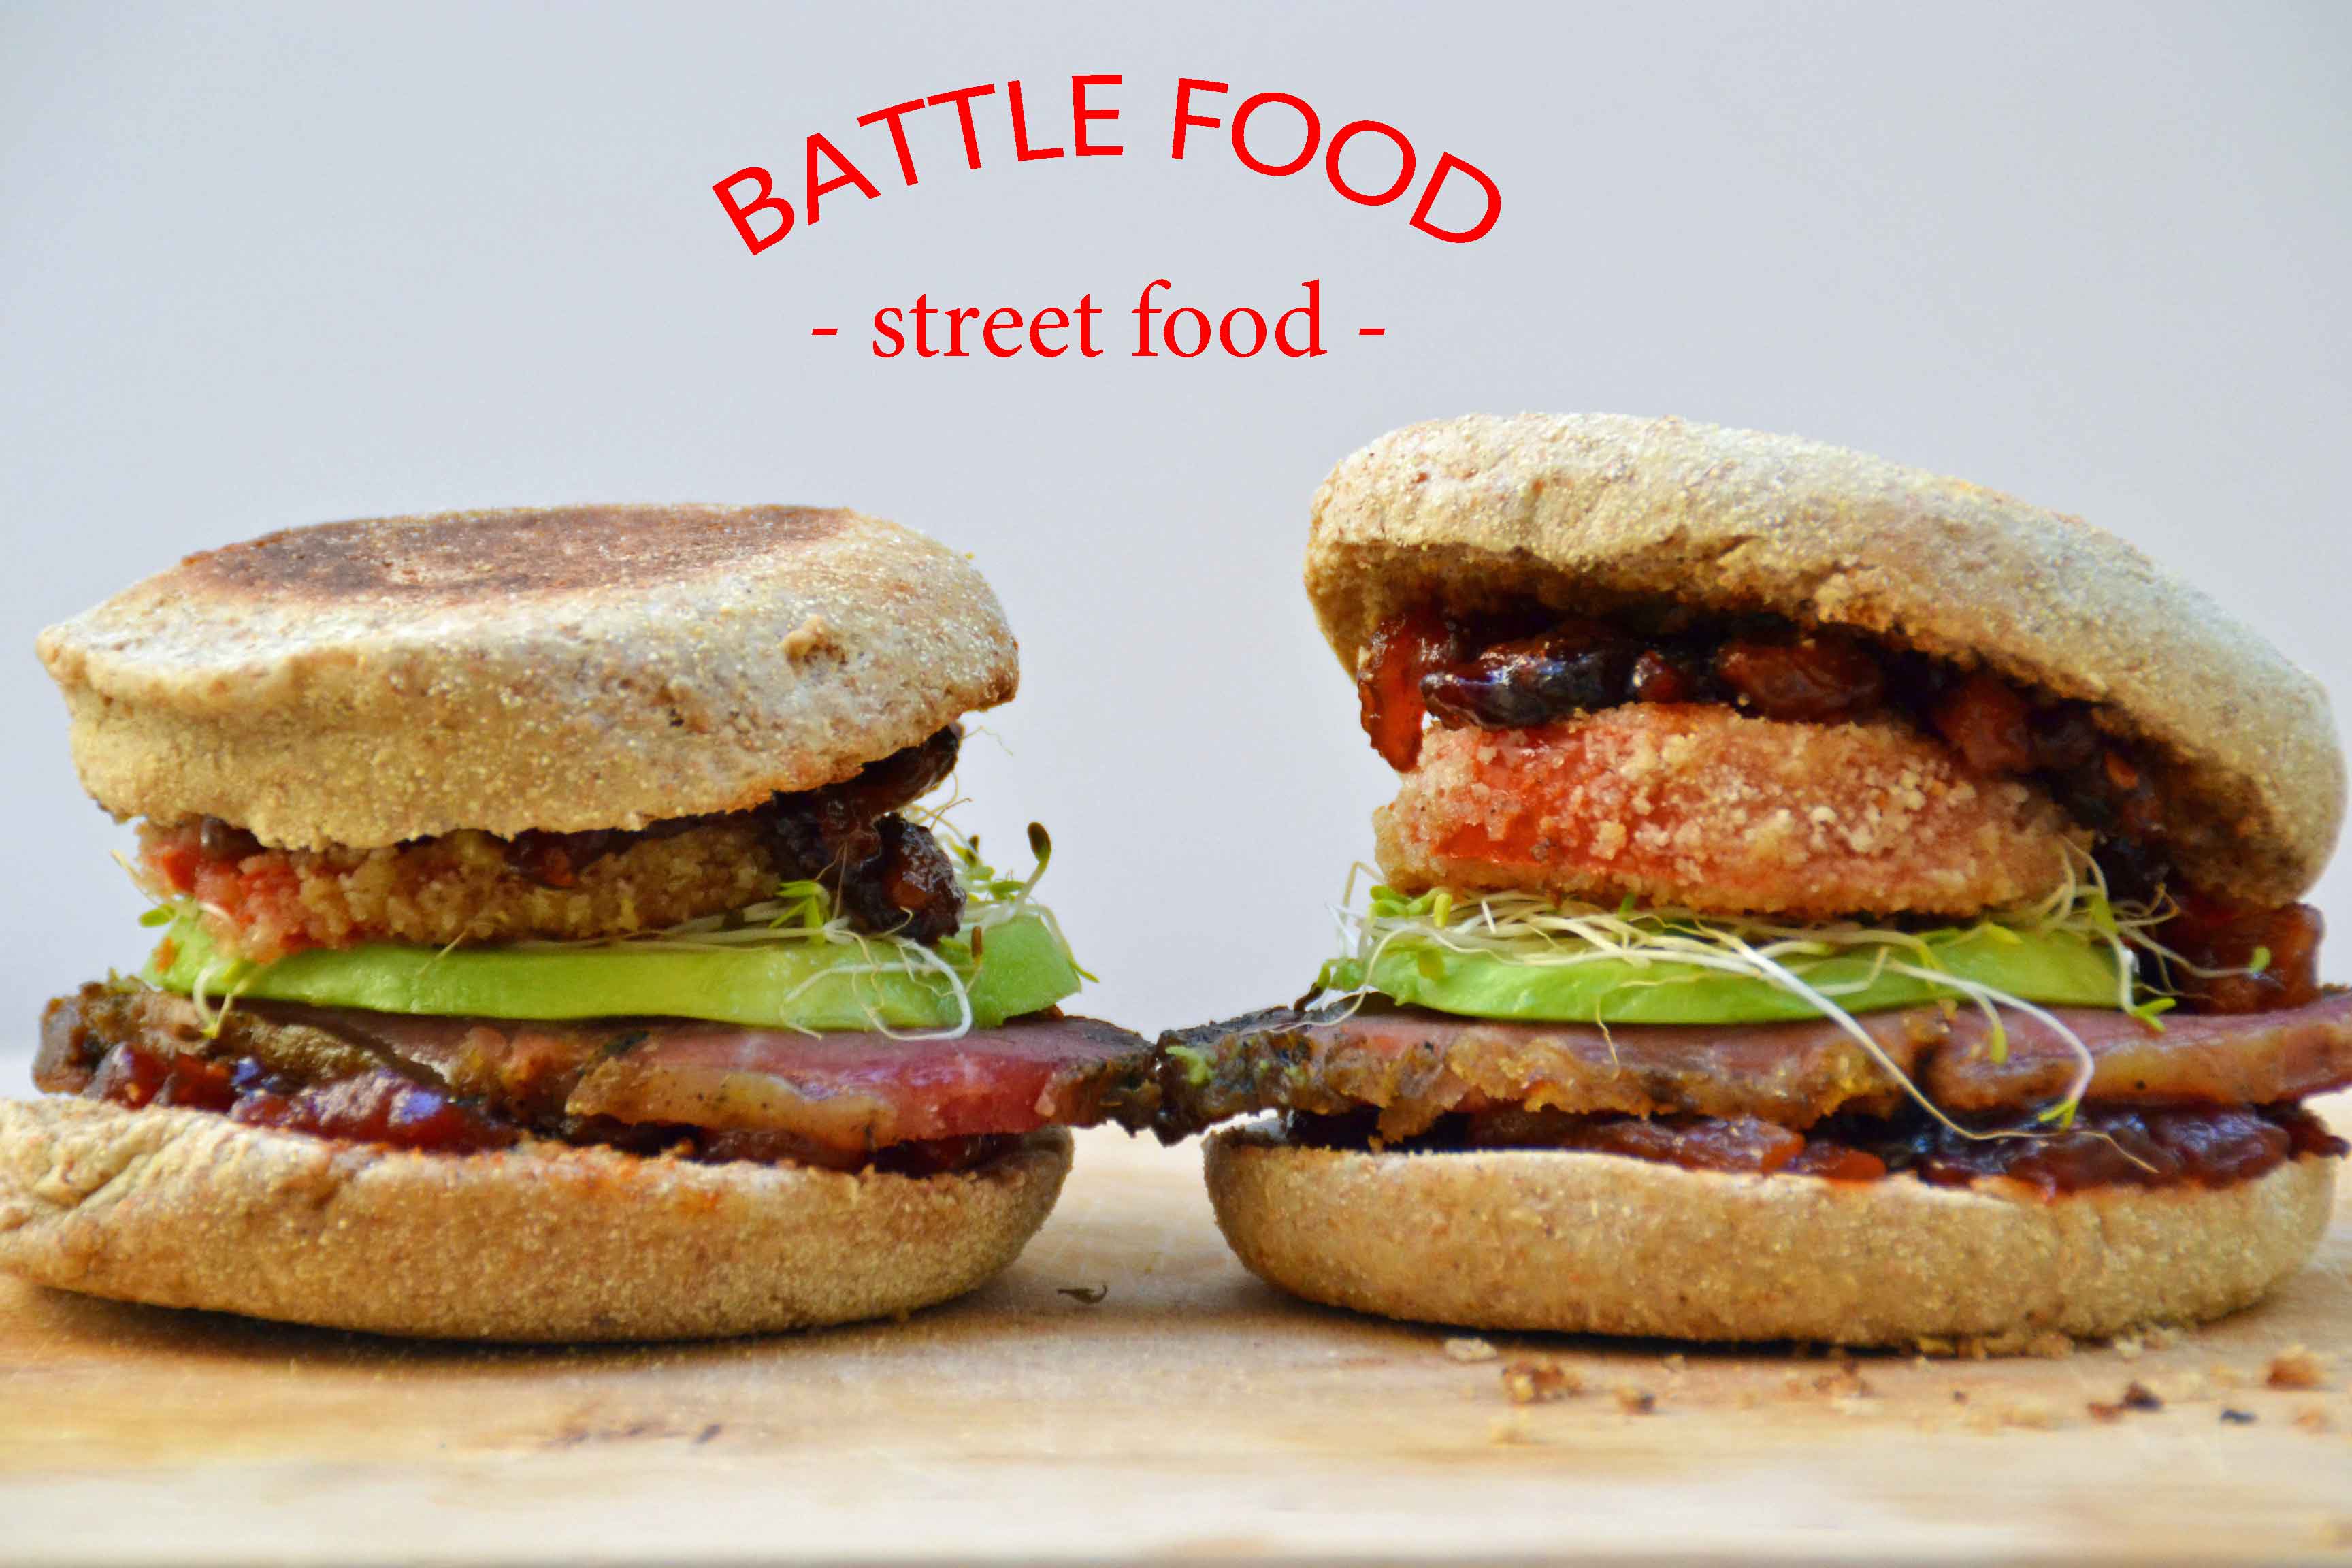 battle food street food